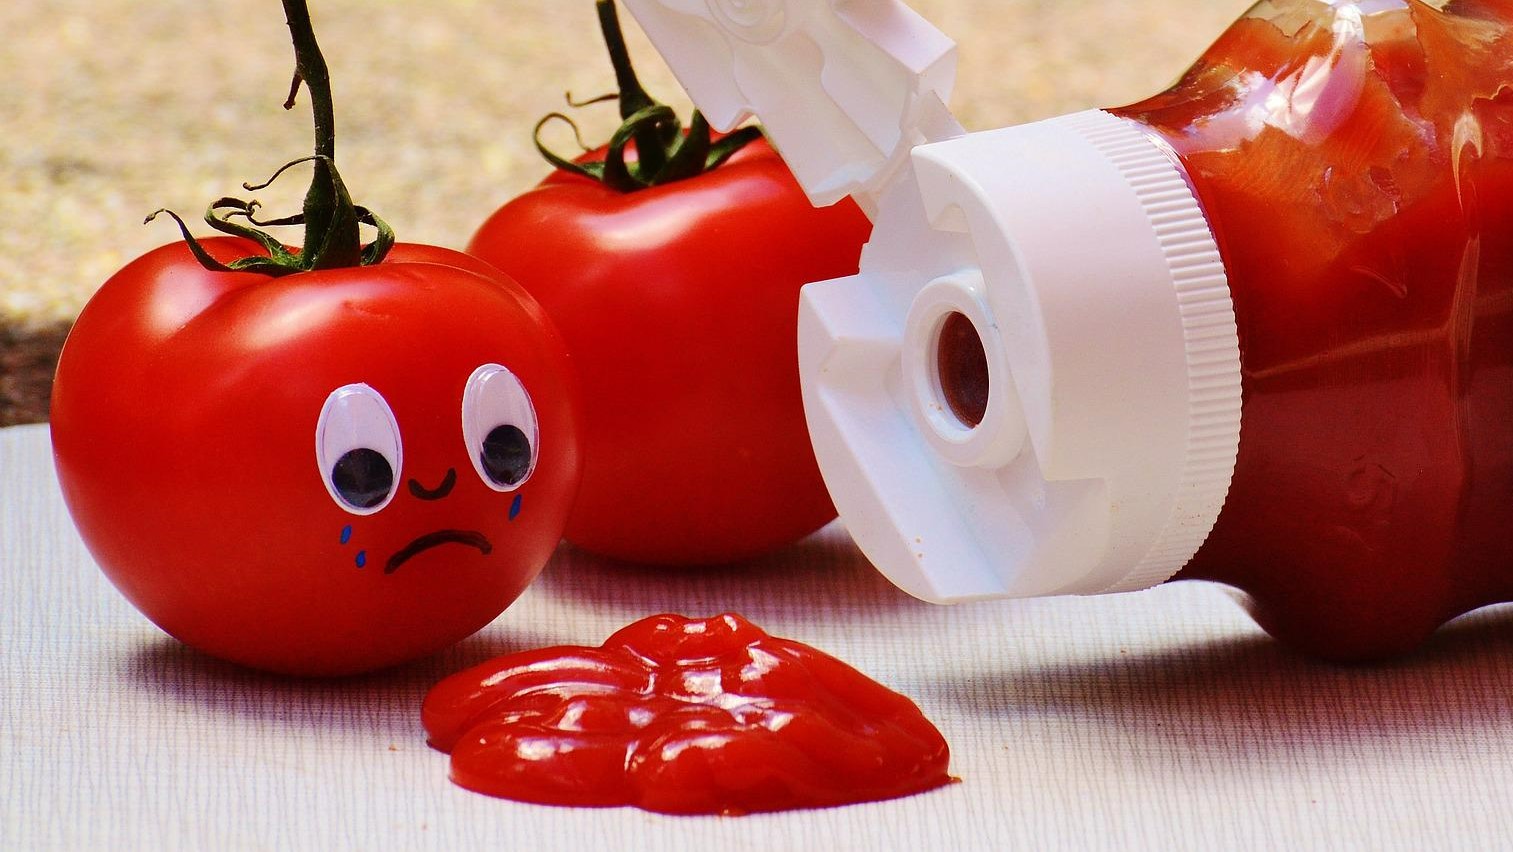 Aranyos paradicsom sír a ketchupos flakon mellett.